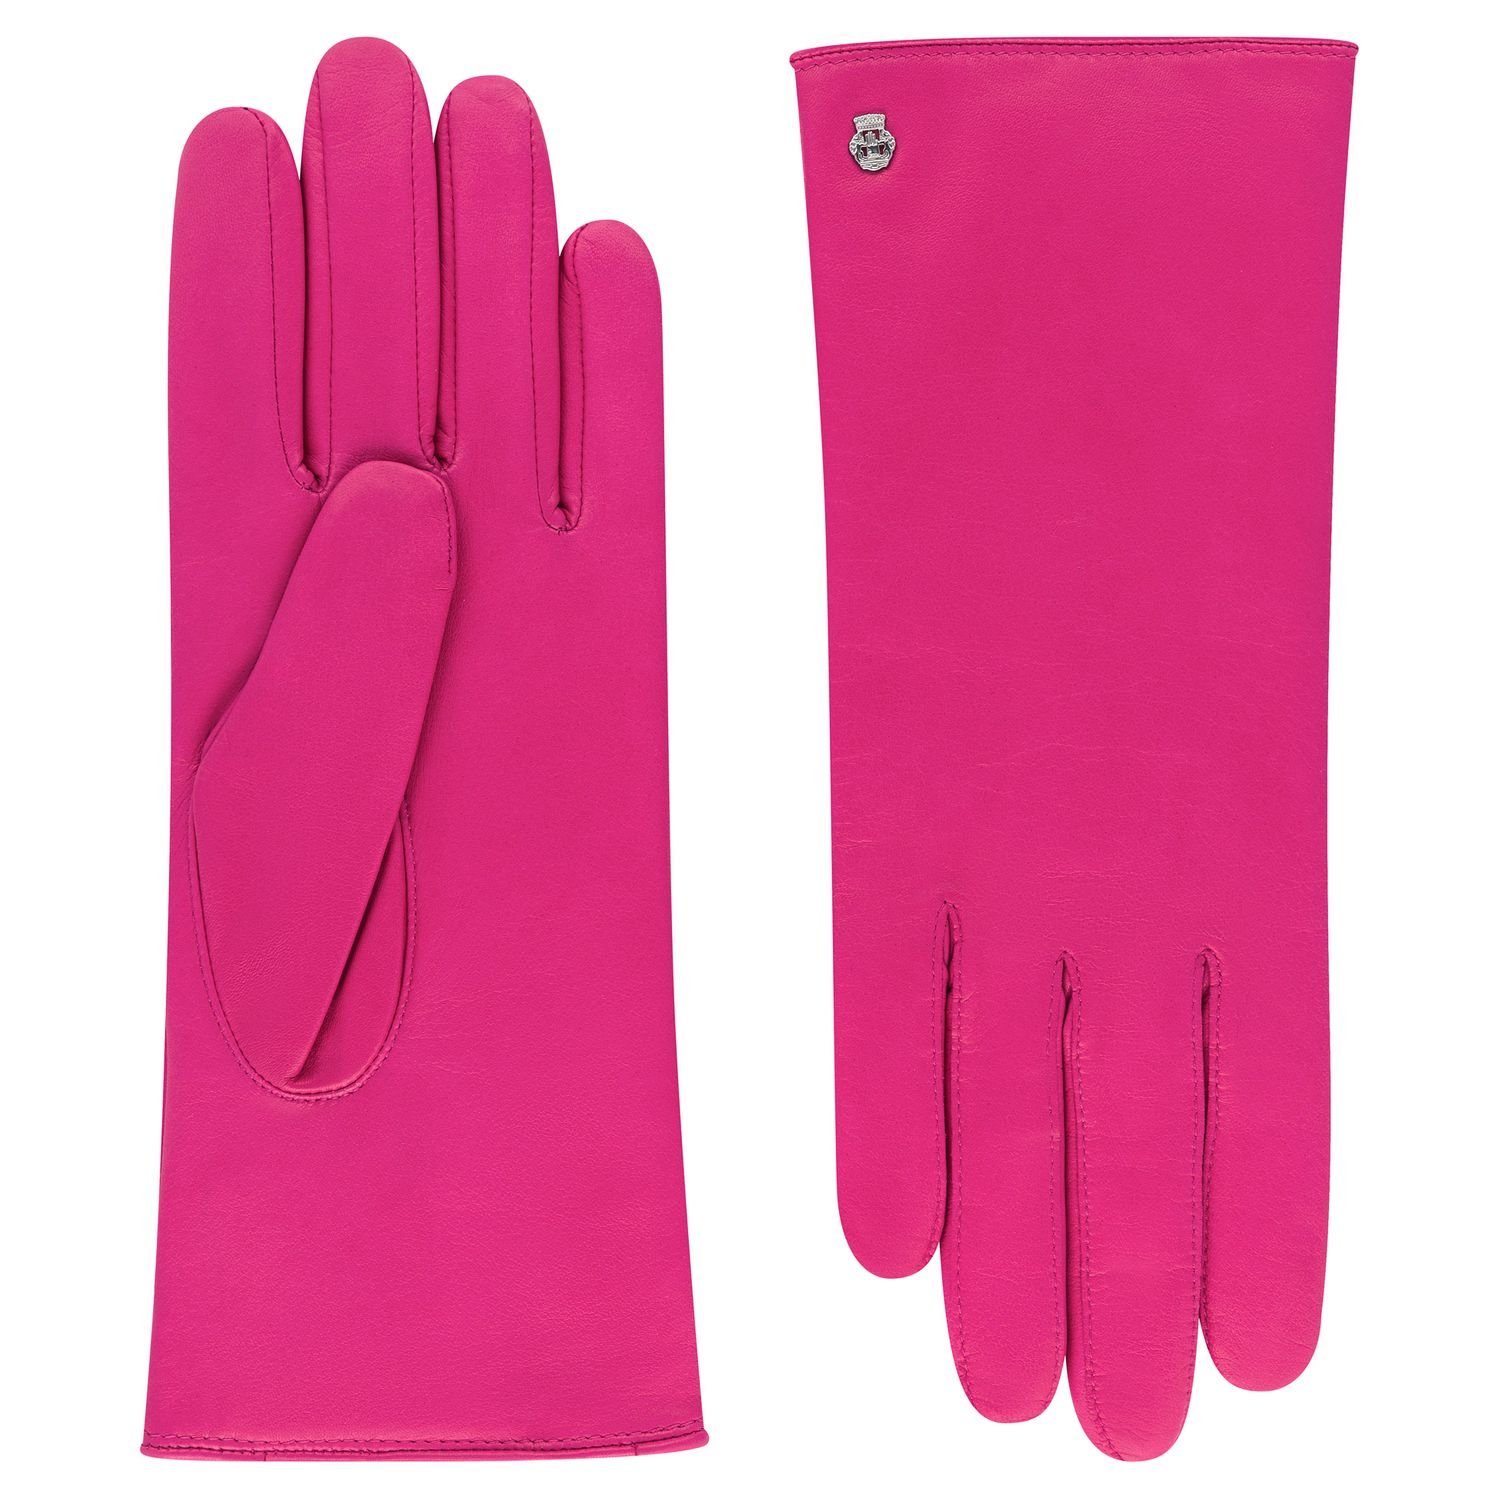 Roeckl Lederhandschuhe Leder-Handschuhe Futtermix aus Wolle und Kaschmir 310-candy